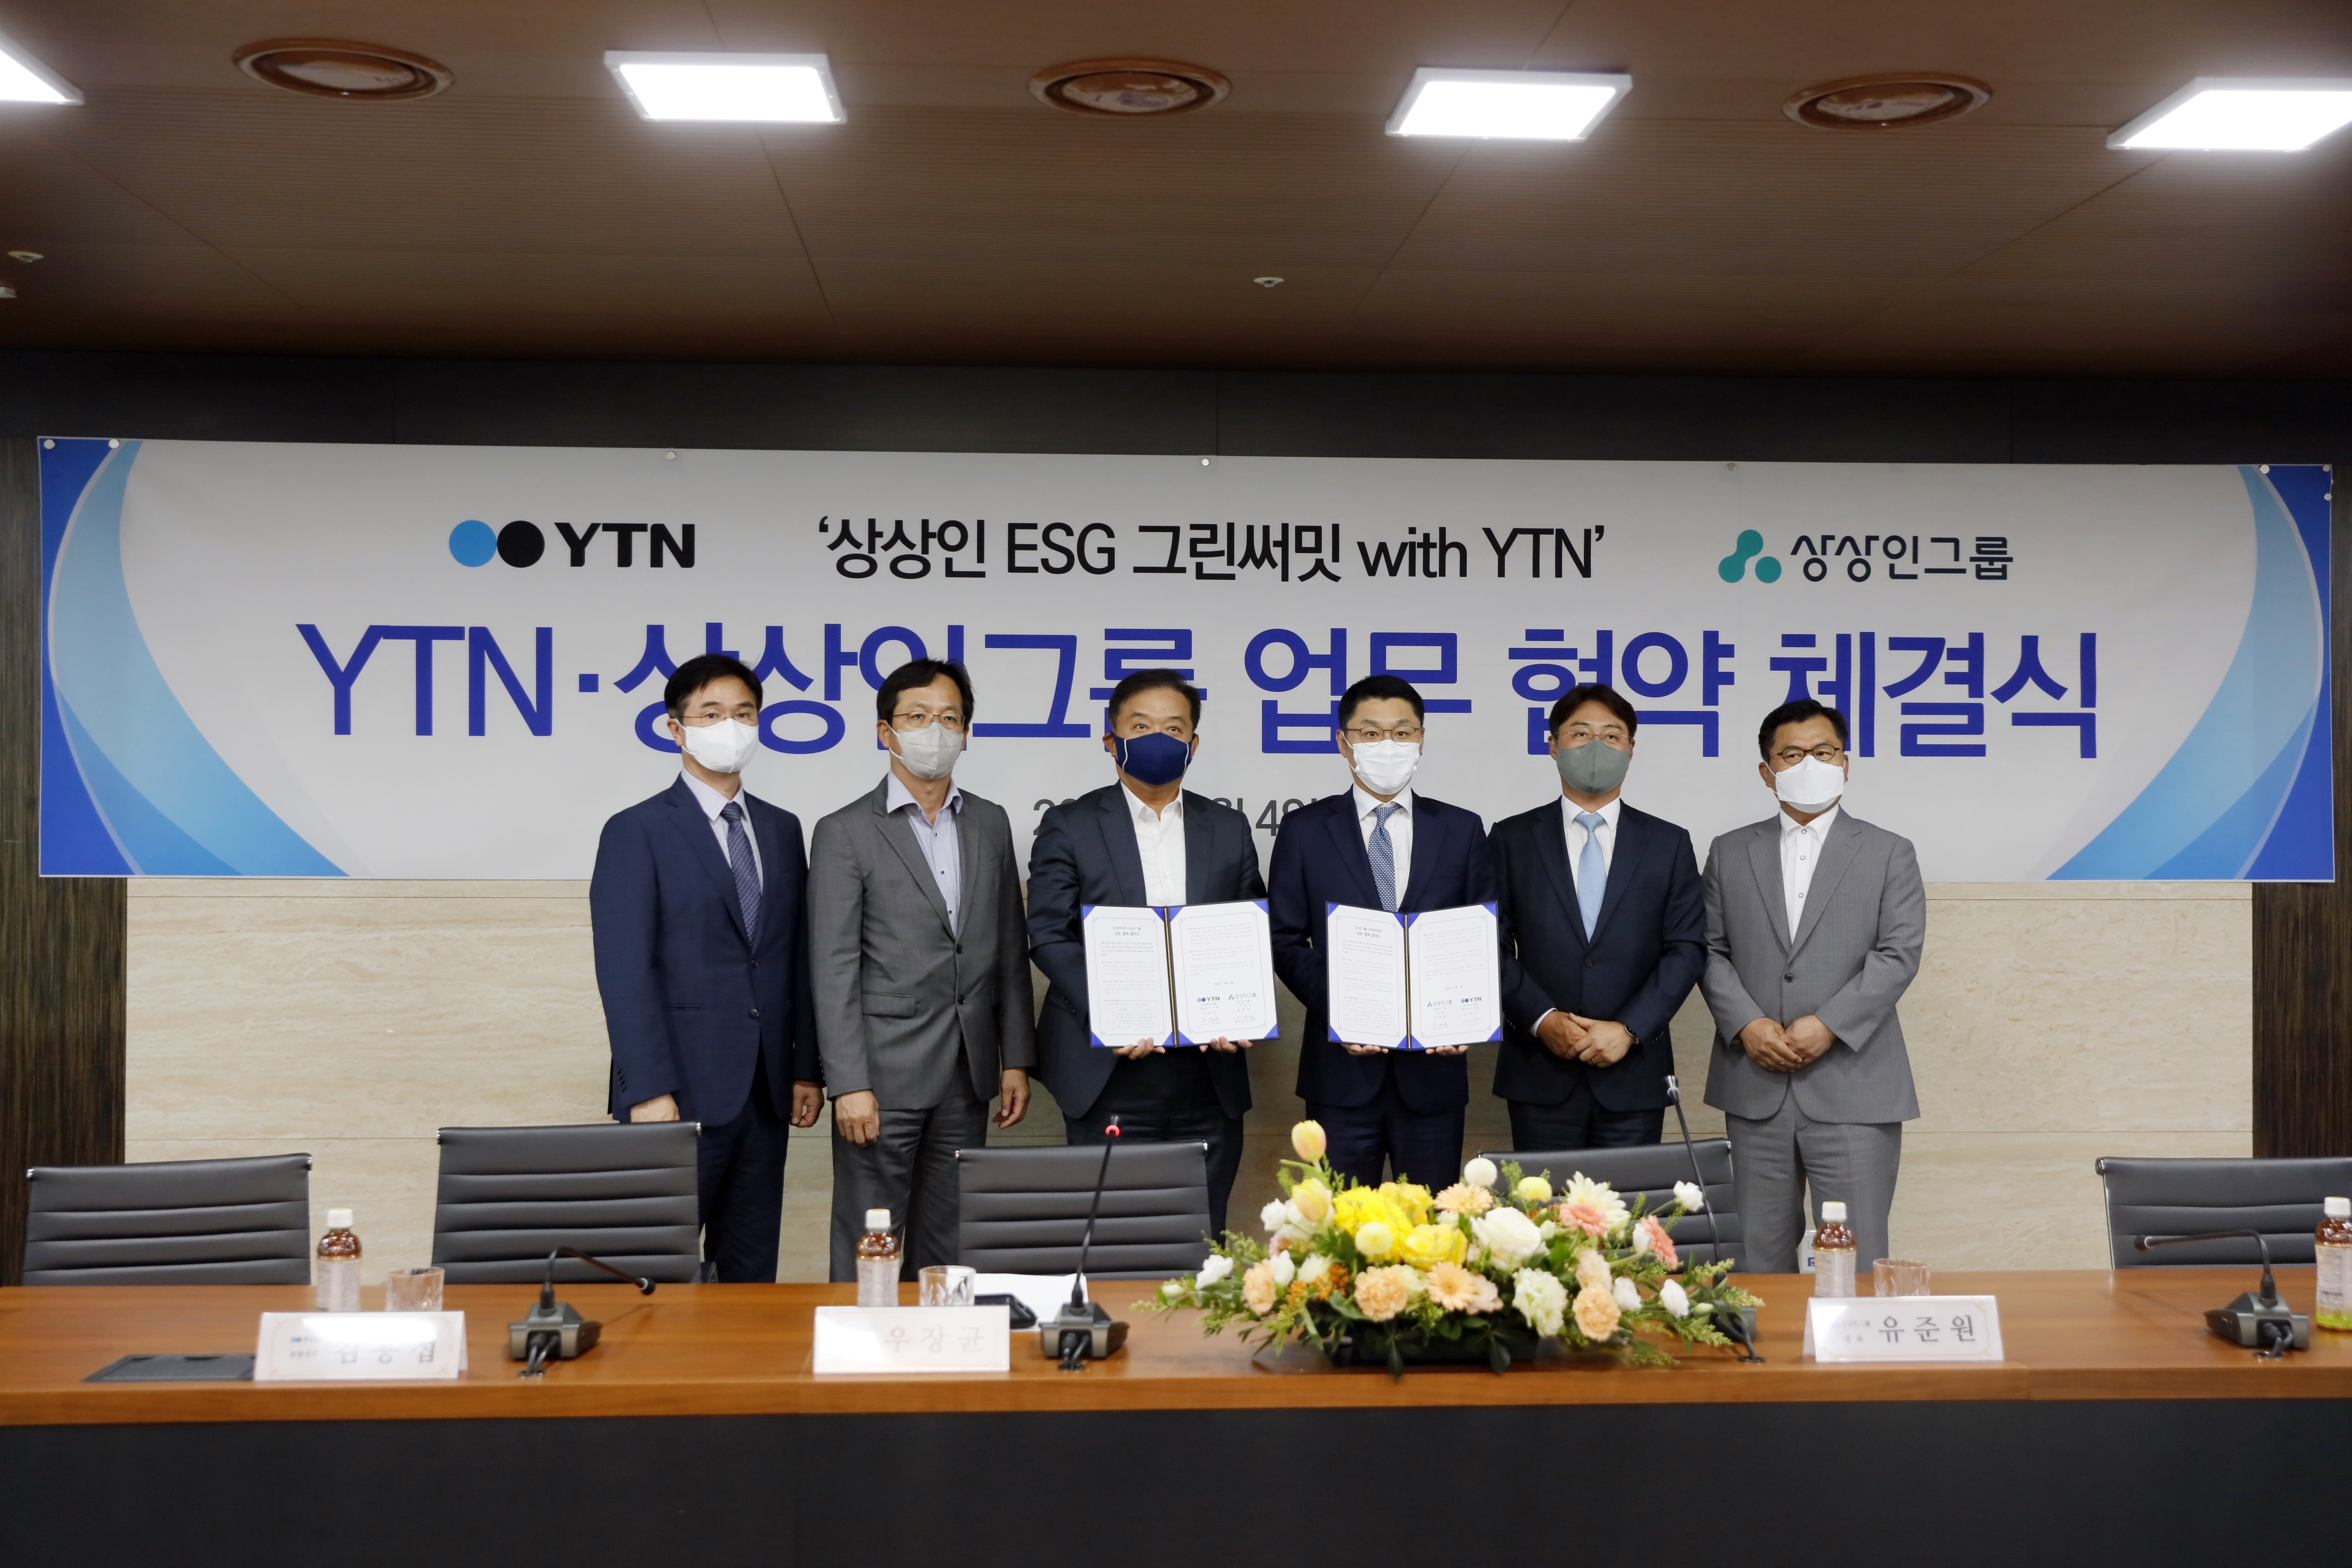 YTN-상상인그룹, ESG 경영 강화 위한 업무협약 체결